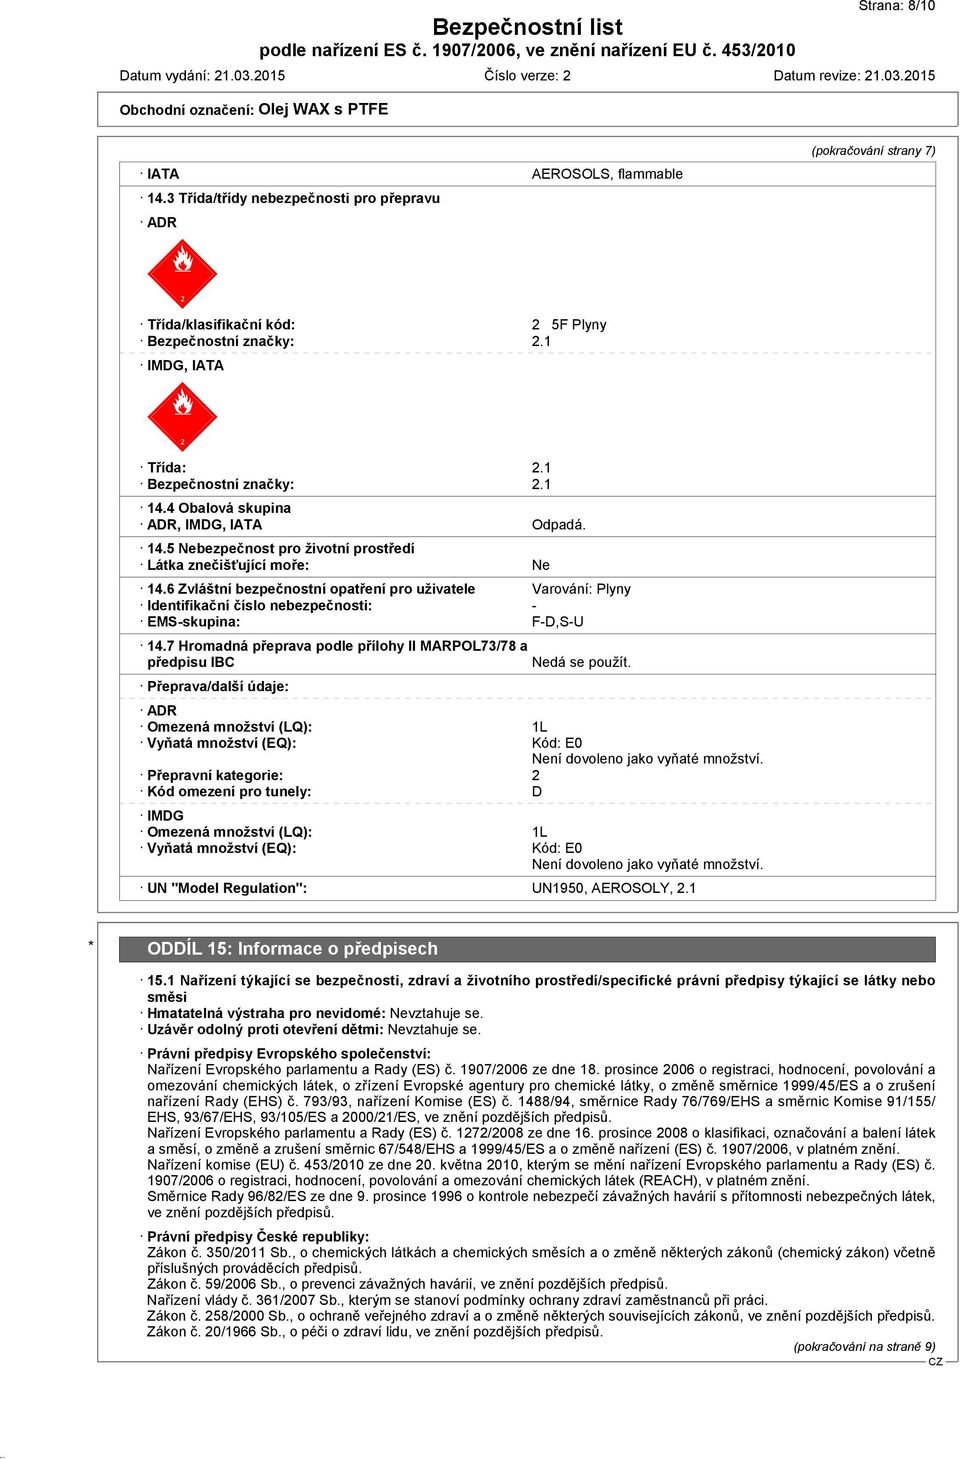 6 Zvláštní bezpečnostní opatření pro uživatele Varování: Plyny Identifikační číslo nebezpečnosti: - EMS-skupina: F-D,S-U 14.